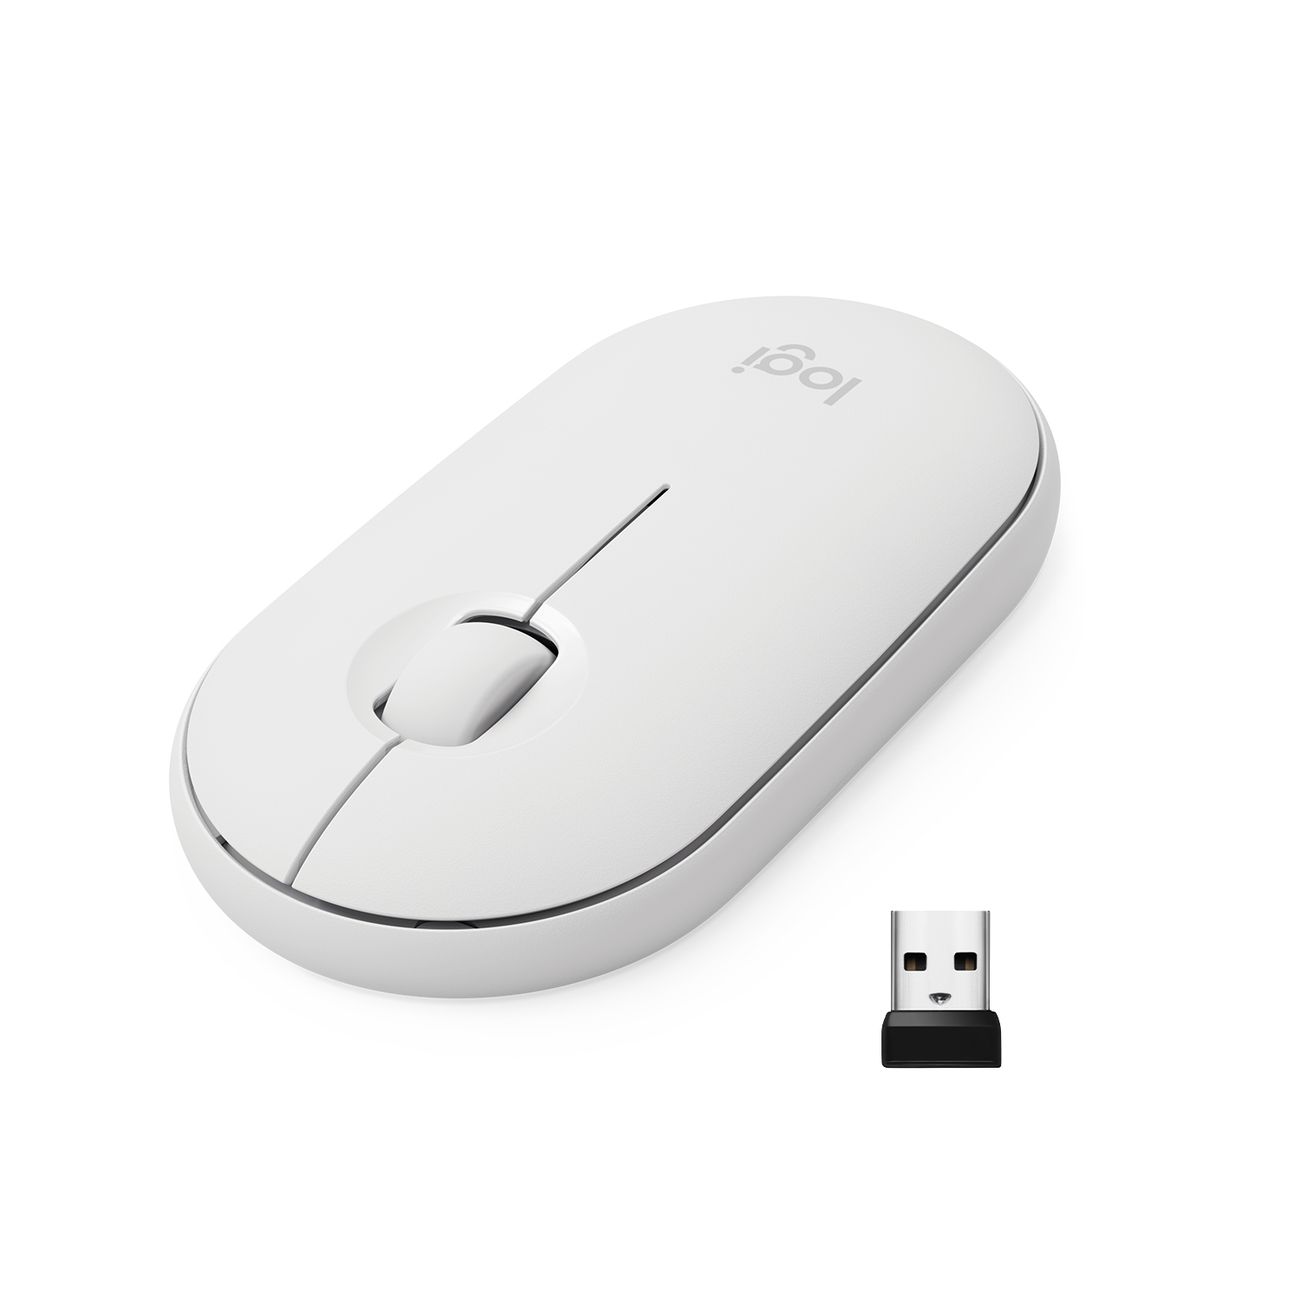 Мышь беспроводная Logitech M350 Pebble Mouse, white (910-005716)